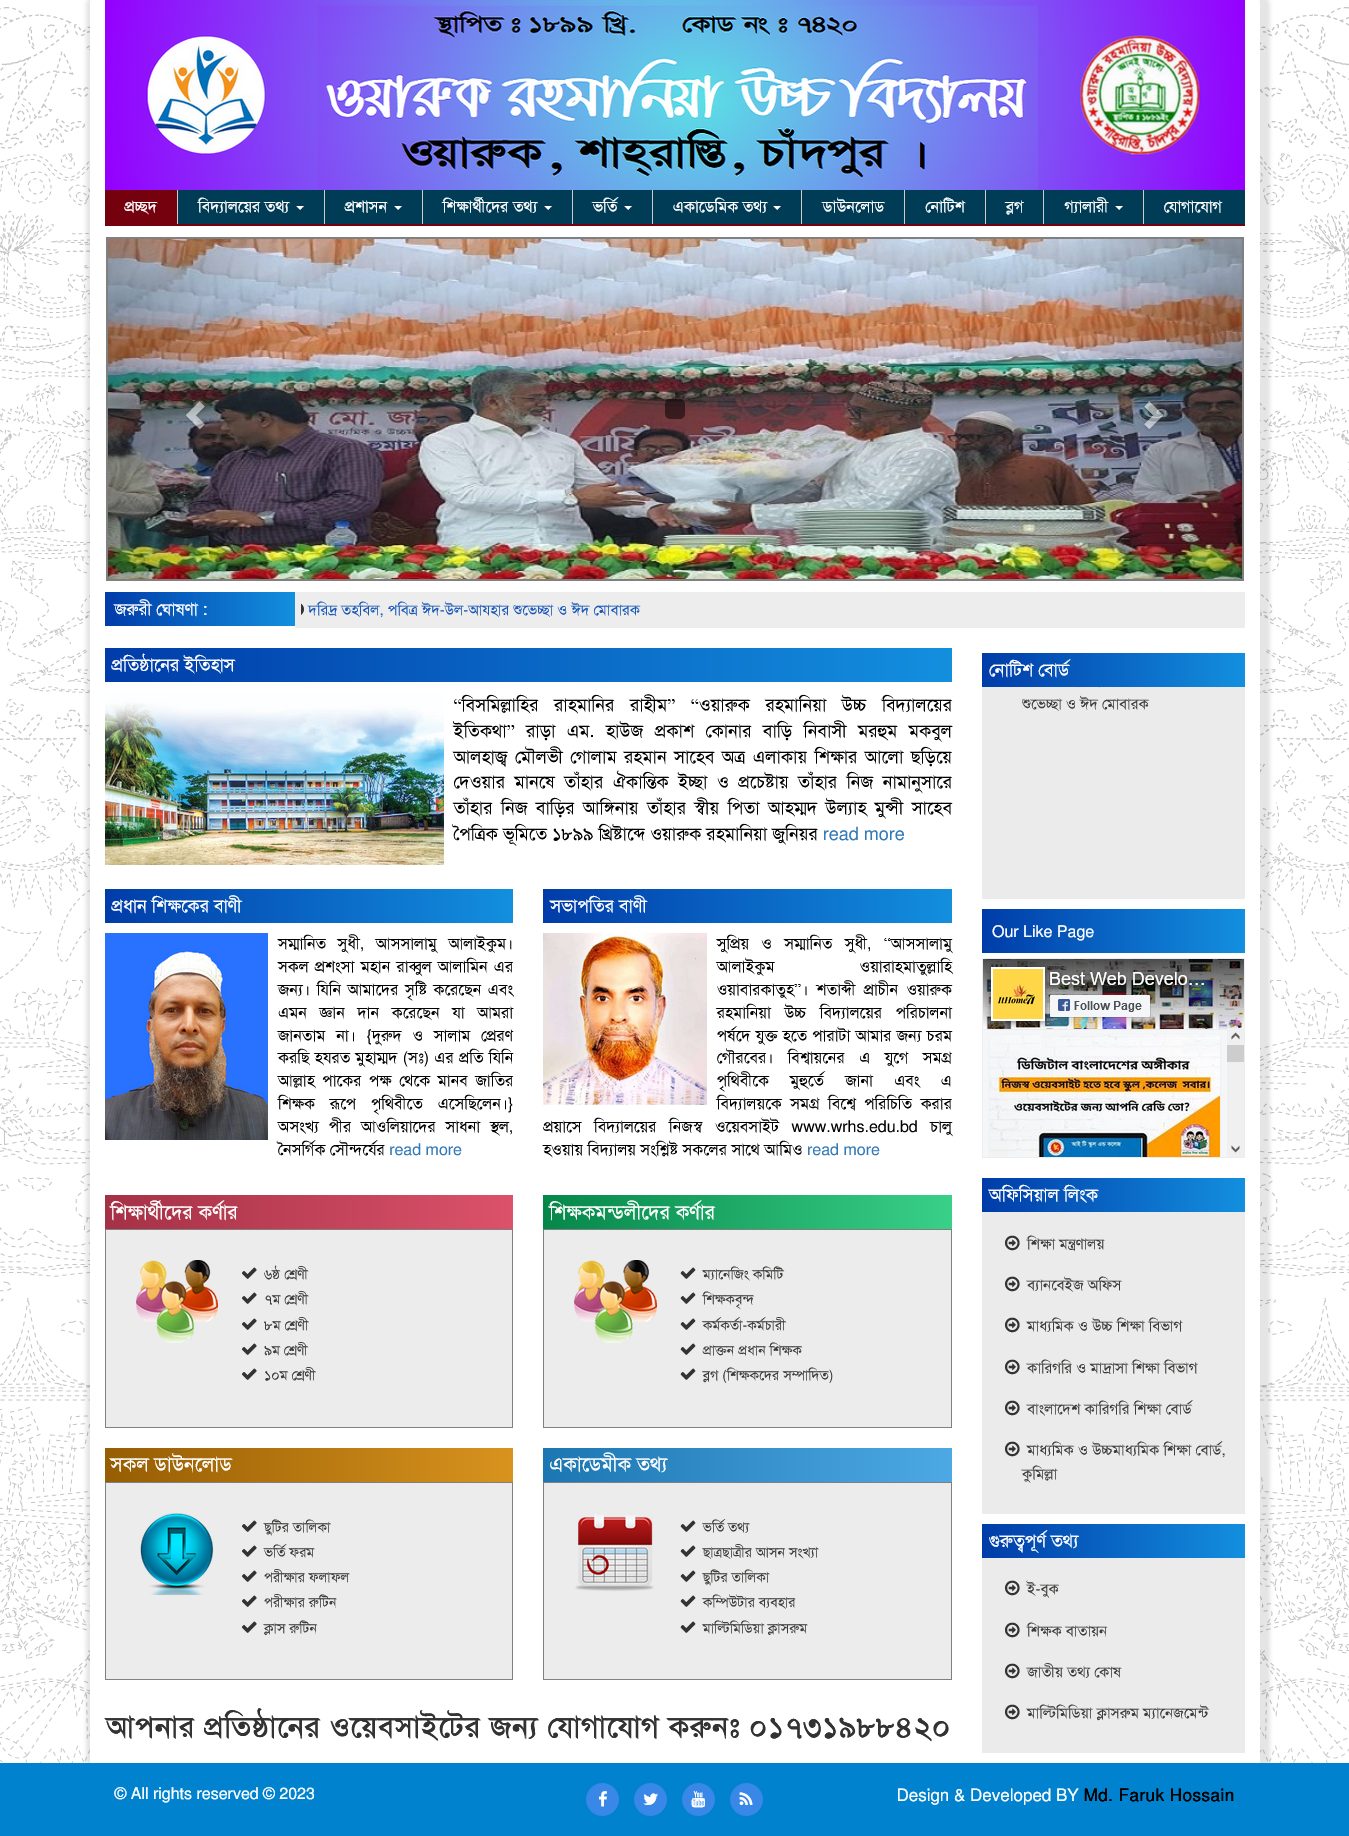 114856Prothom Alo / Dhaka Post / Jago News / Agami News Theme Installation